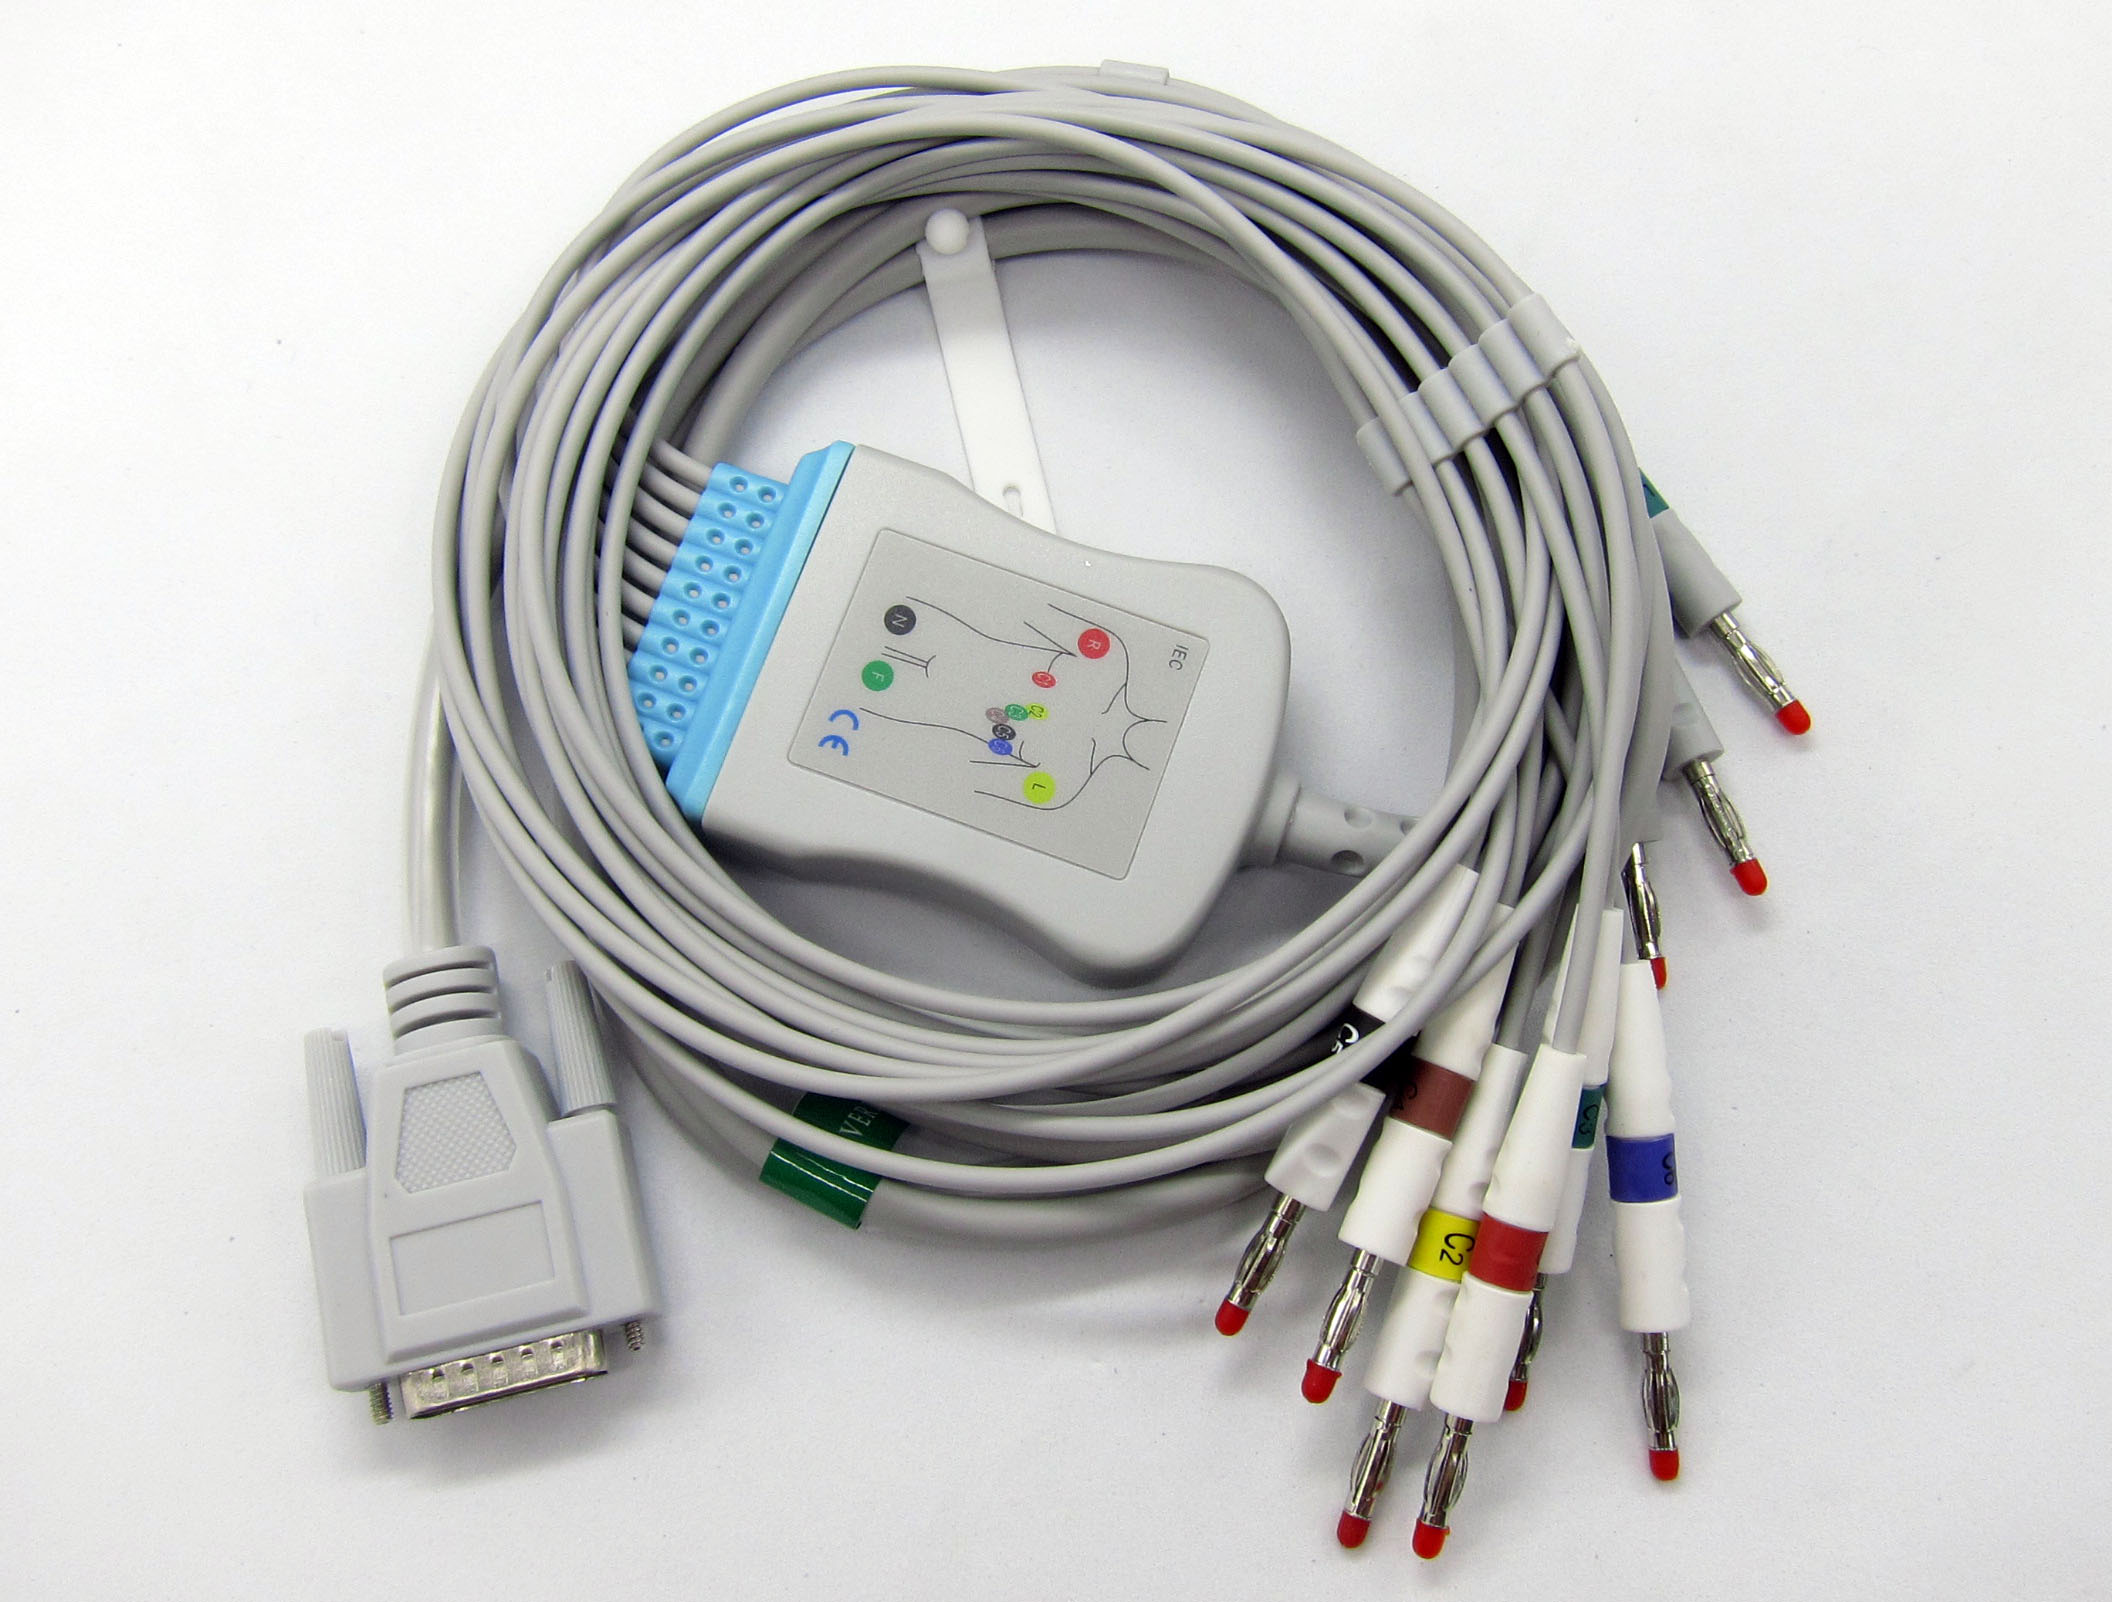 ЭКГ кабель пациента для Biocare ECG-101, ECG-101B, ECG-101G, ECG-300, ECG-300G, ECG-1200, ECG-1215 (после 2015 г выпуска), ECG 1230, ECG-6010, ECG-9803, штекер banana 4мм, IEC